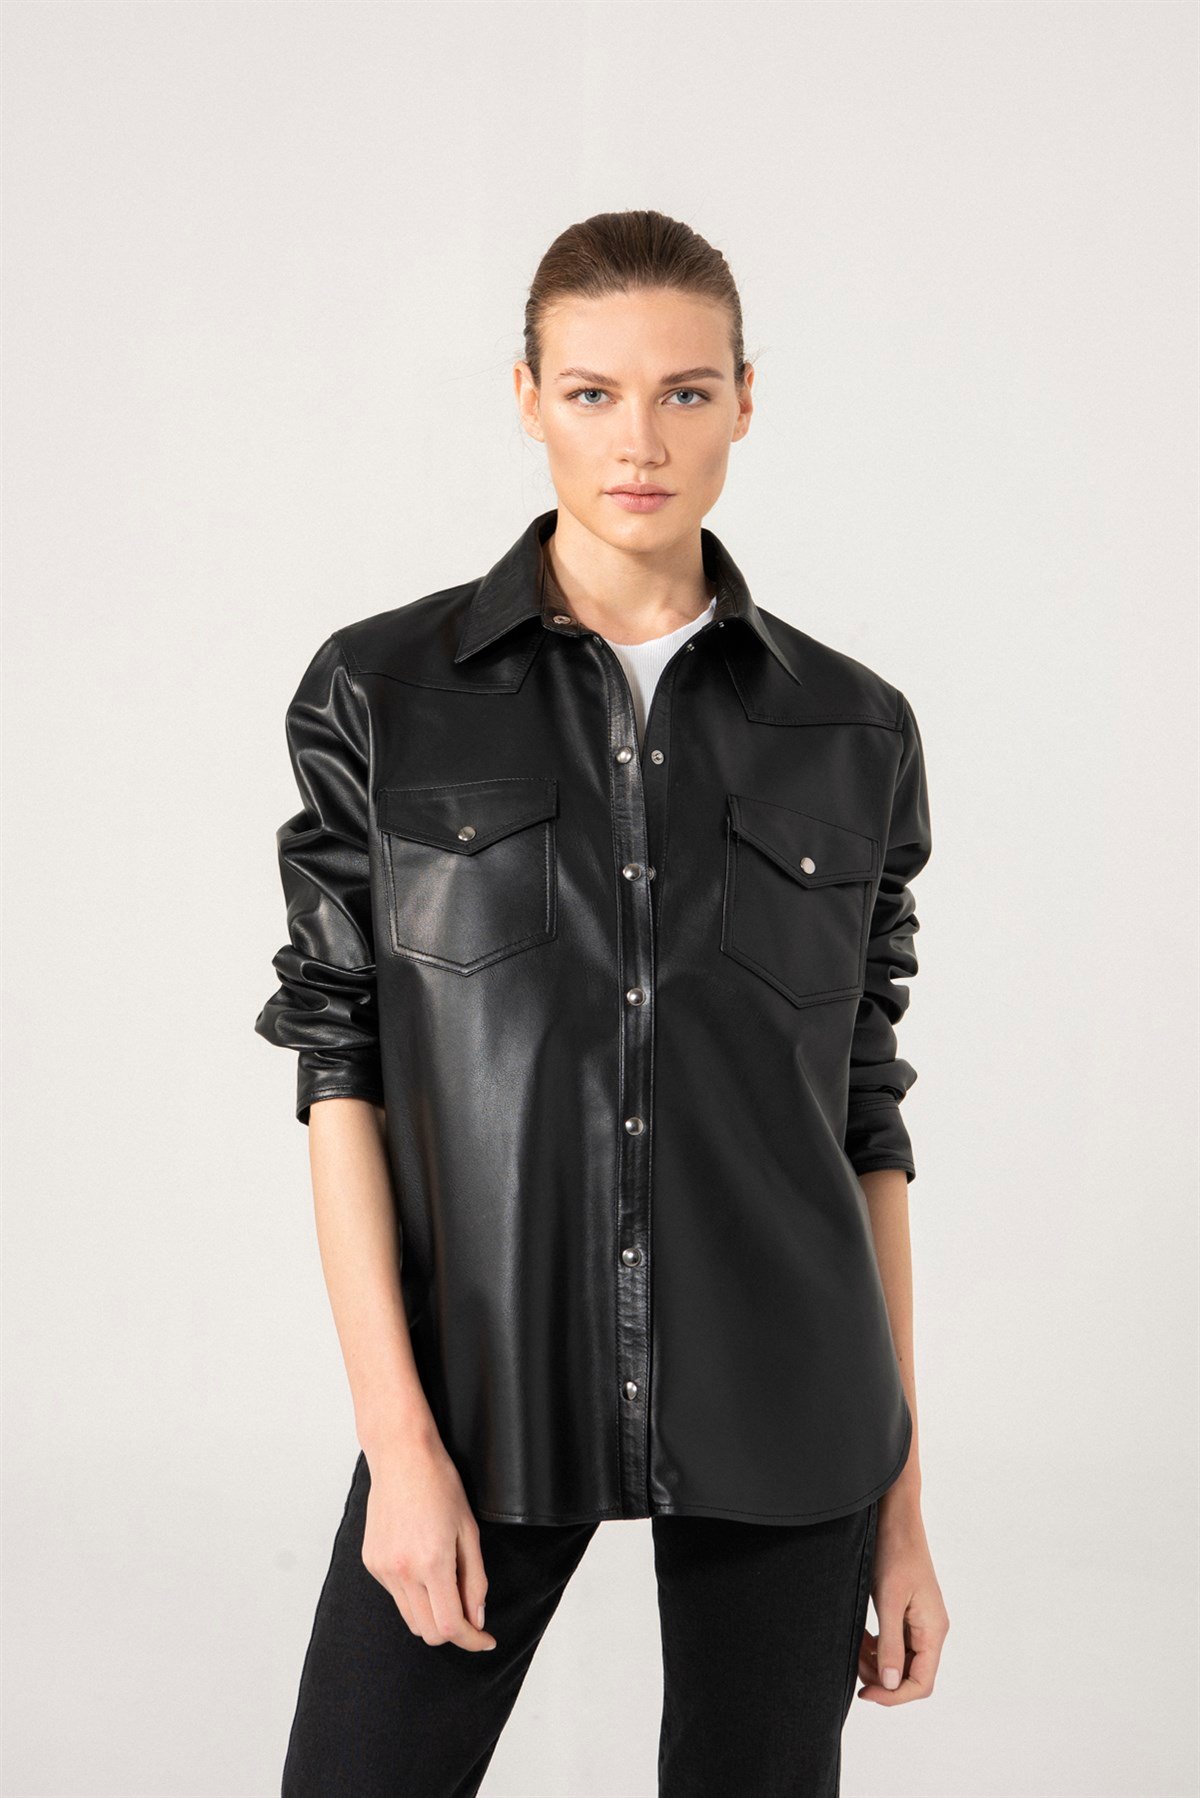 SOPHIA Siyah Deri Gömlek Ceket Kadın Deri Ceket Modelleri